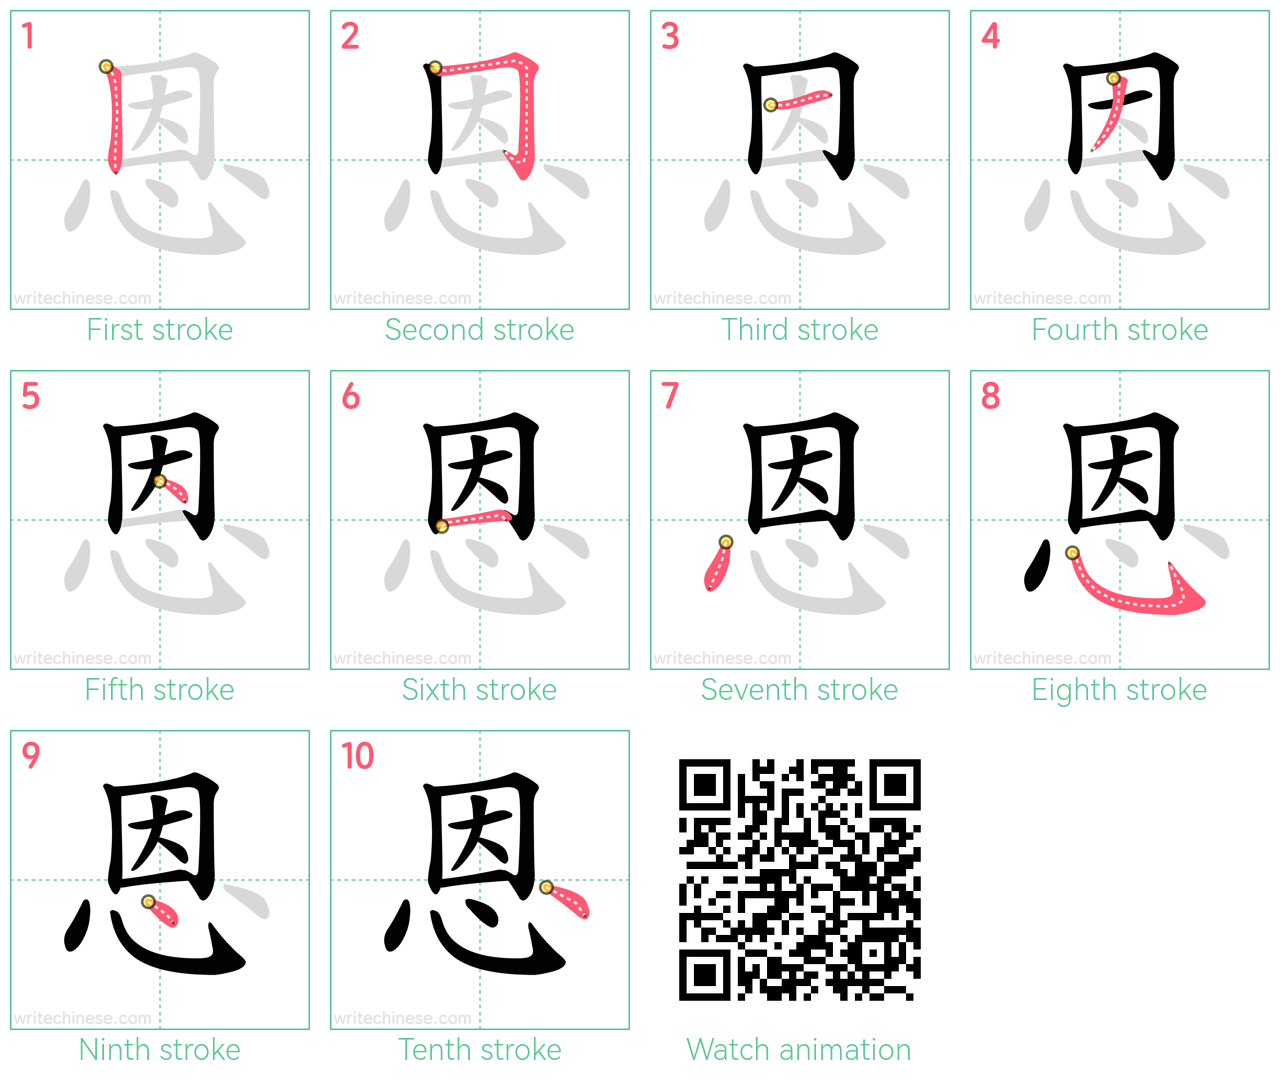 恩 step-by-step stroke order diagrams